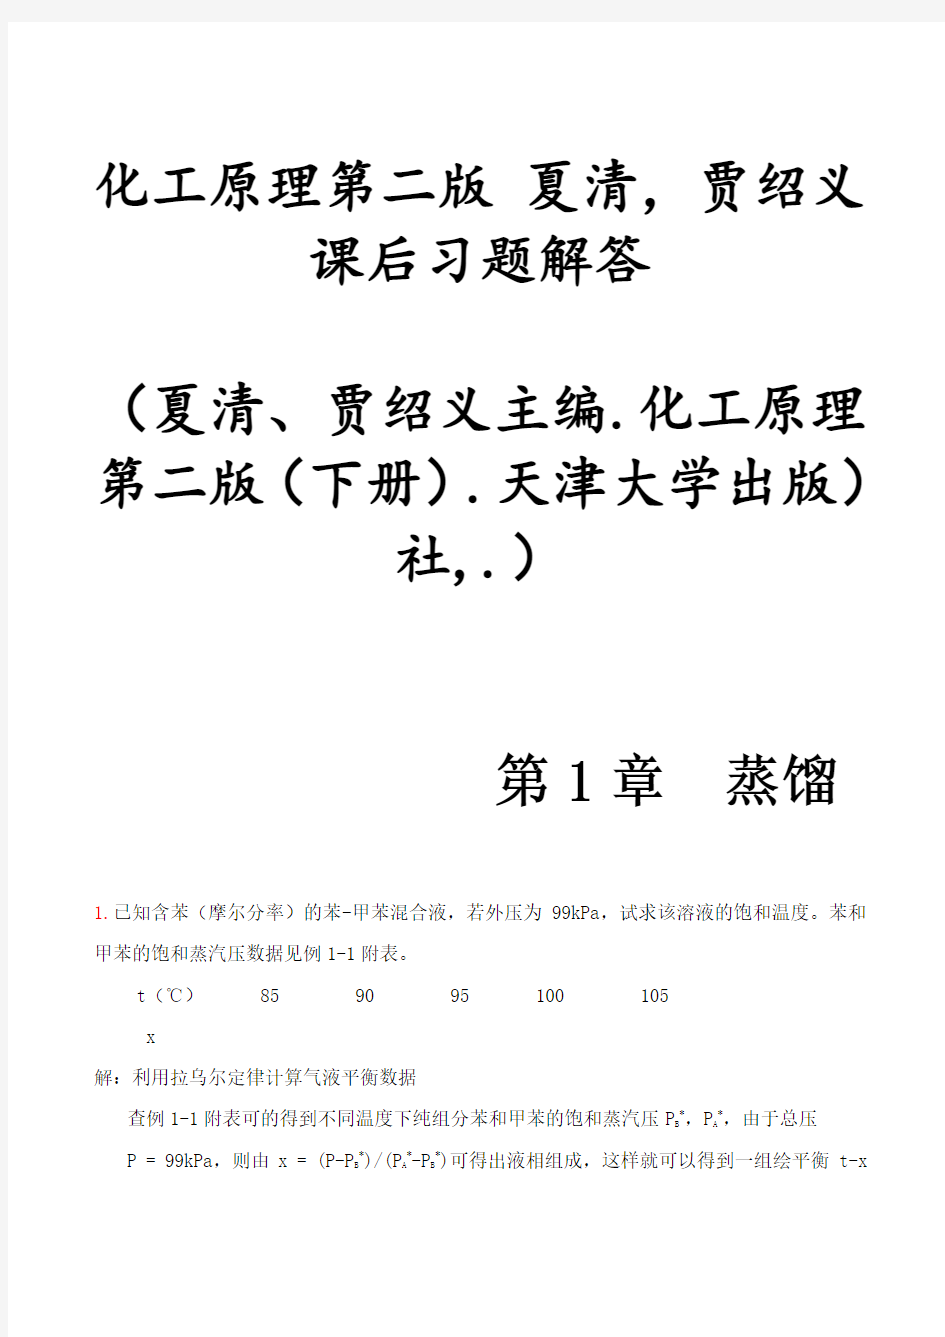 化工原理第二版夏清贾绍义课后习题解答带图